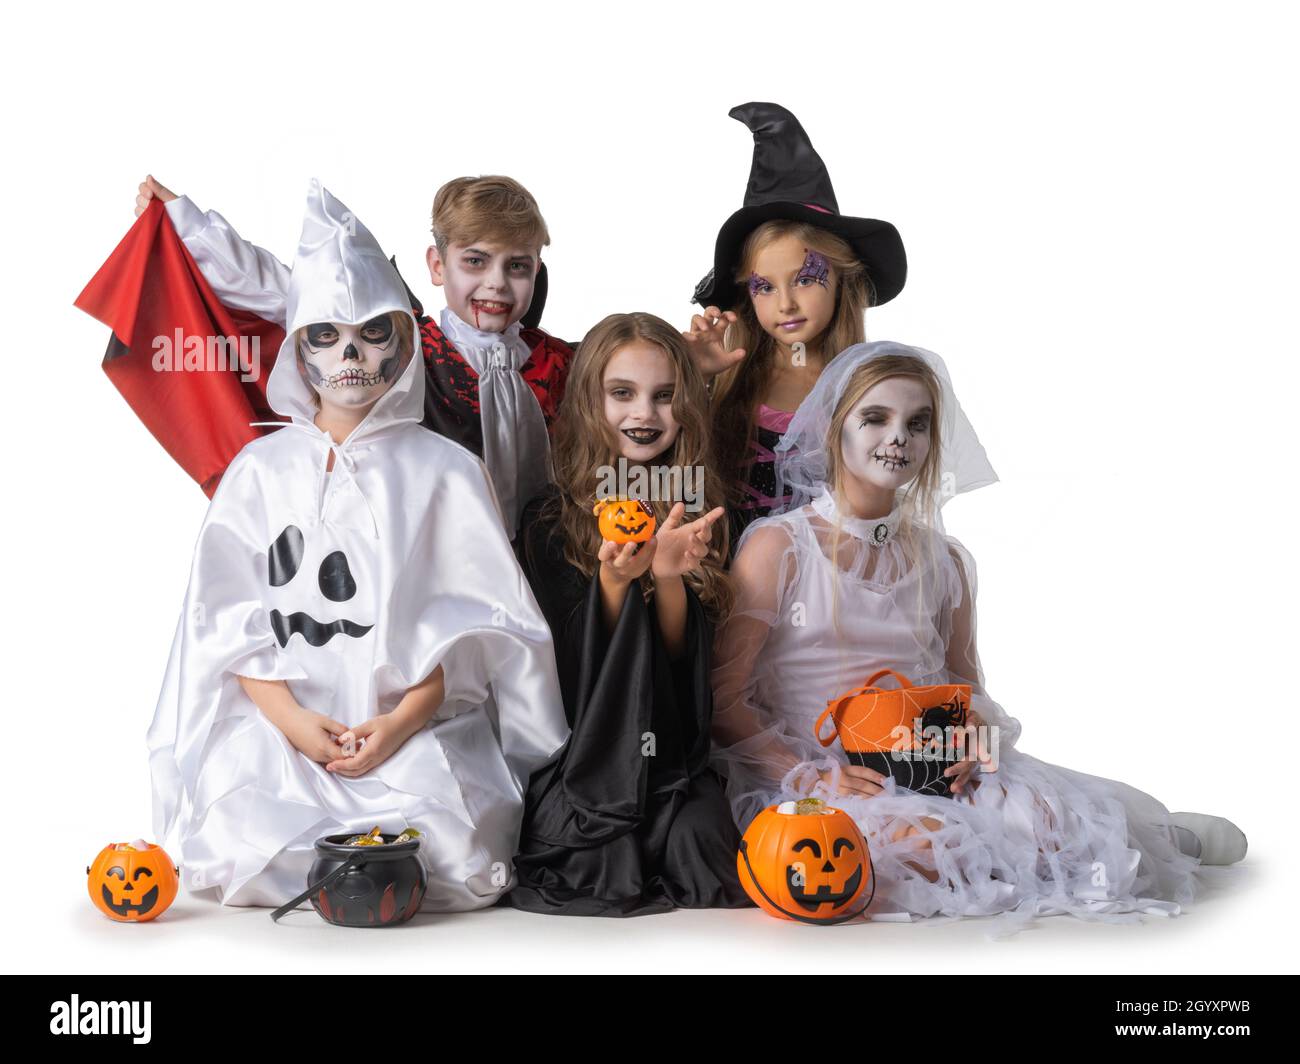 Gruppe von Kindern in fancy Halloween Kostüm Kleid isoliert auf weißem  Hintergrund, gehen Trick oder behandeln mit Eimern von Süßigkeiten  Stockfotografie - Alamy